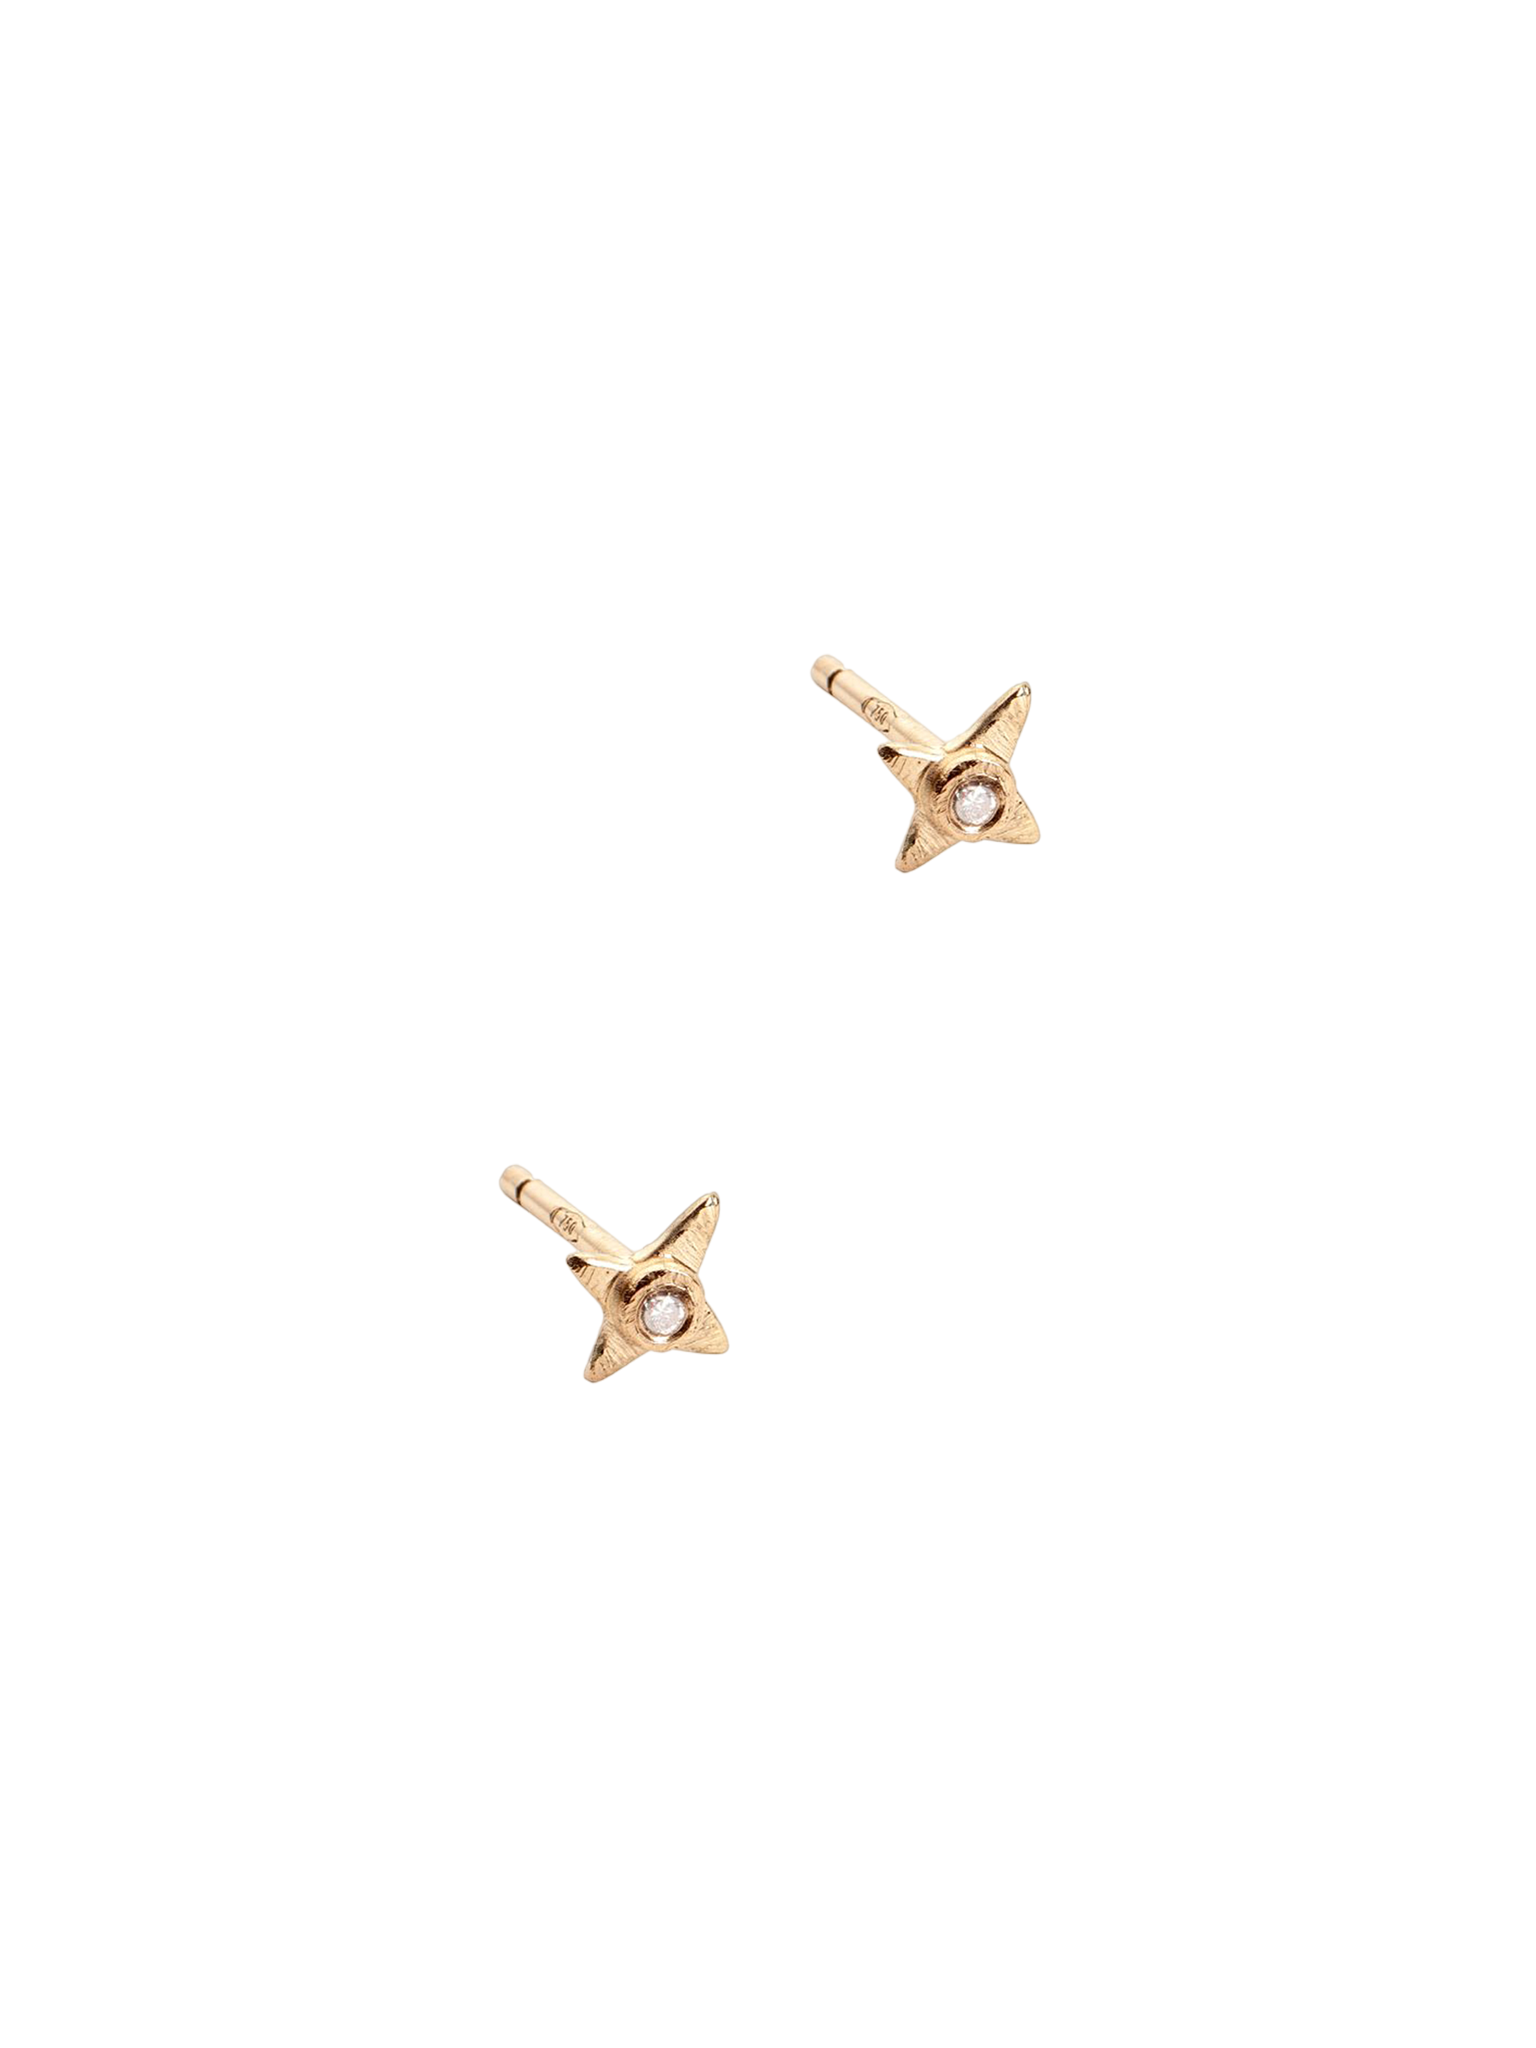 The sitaara earrings 